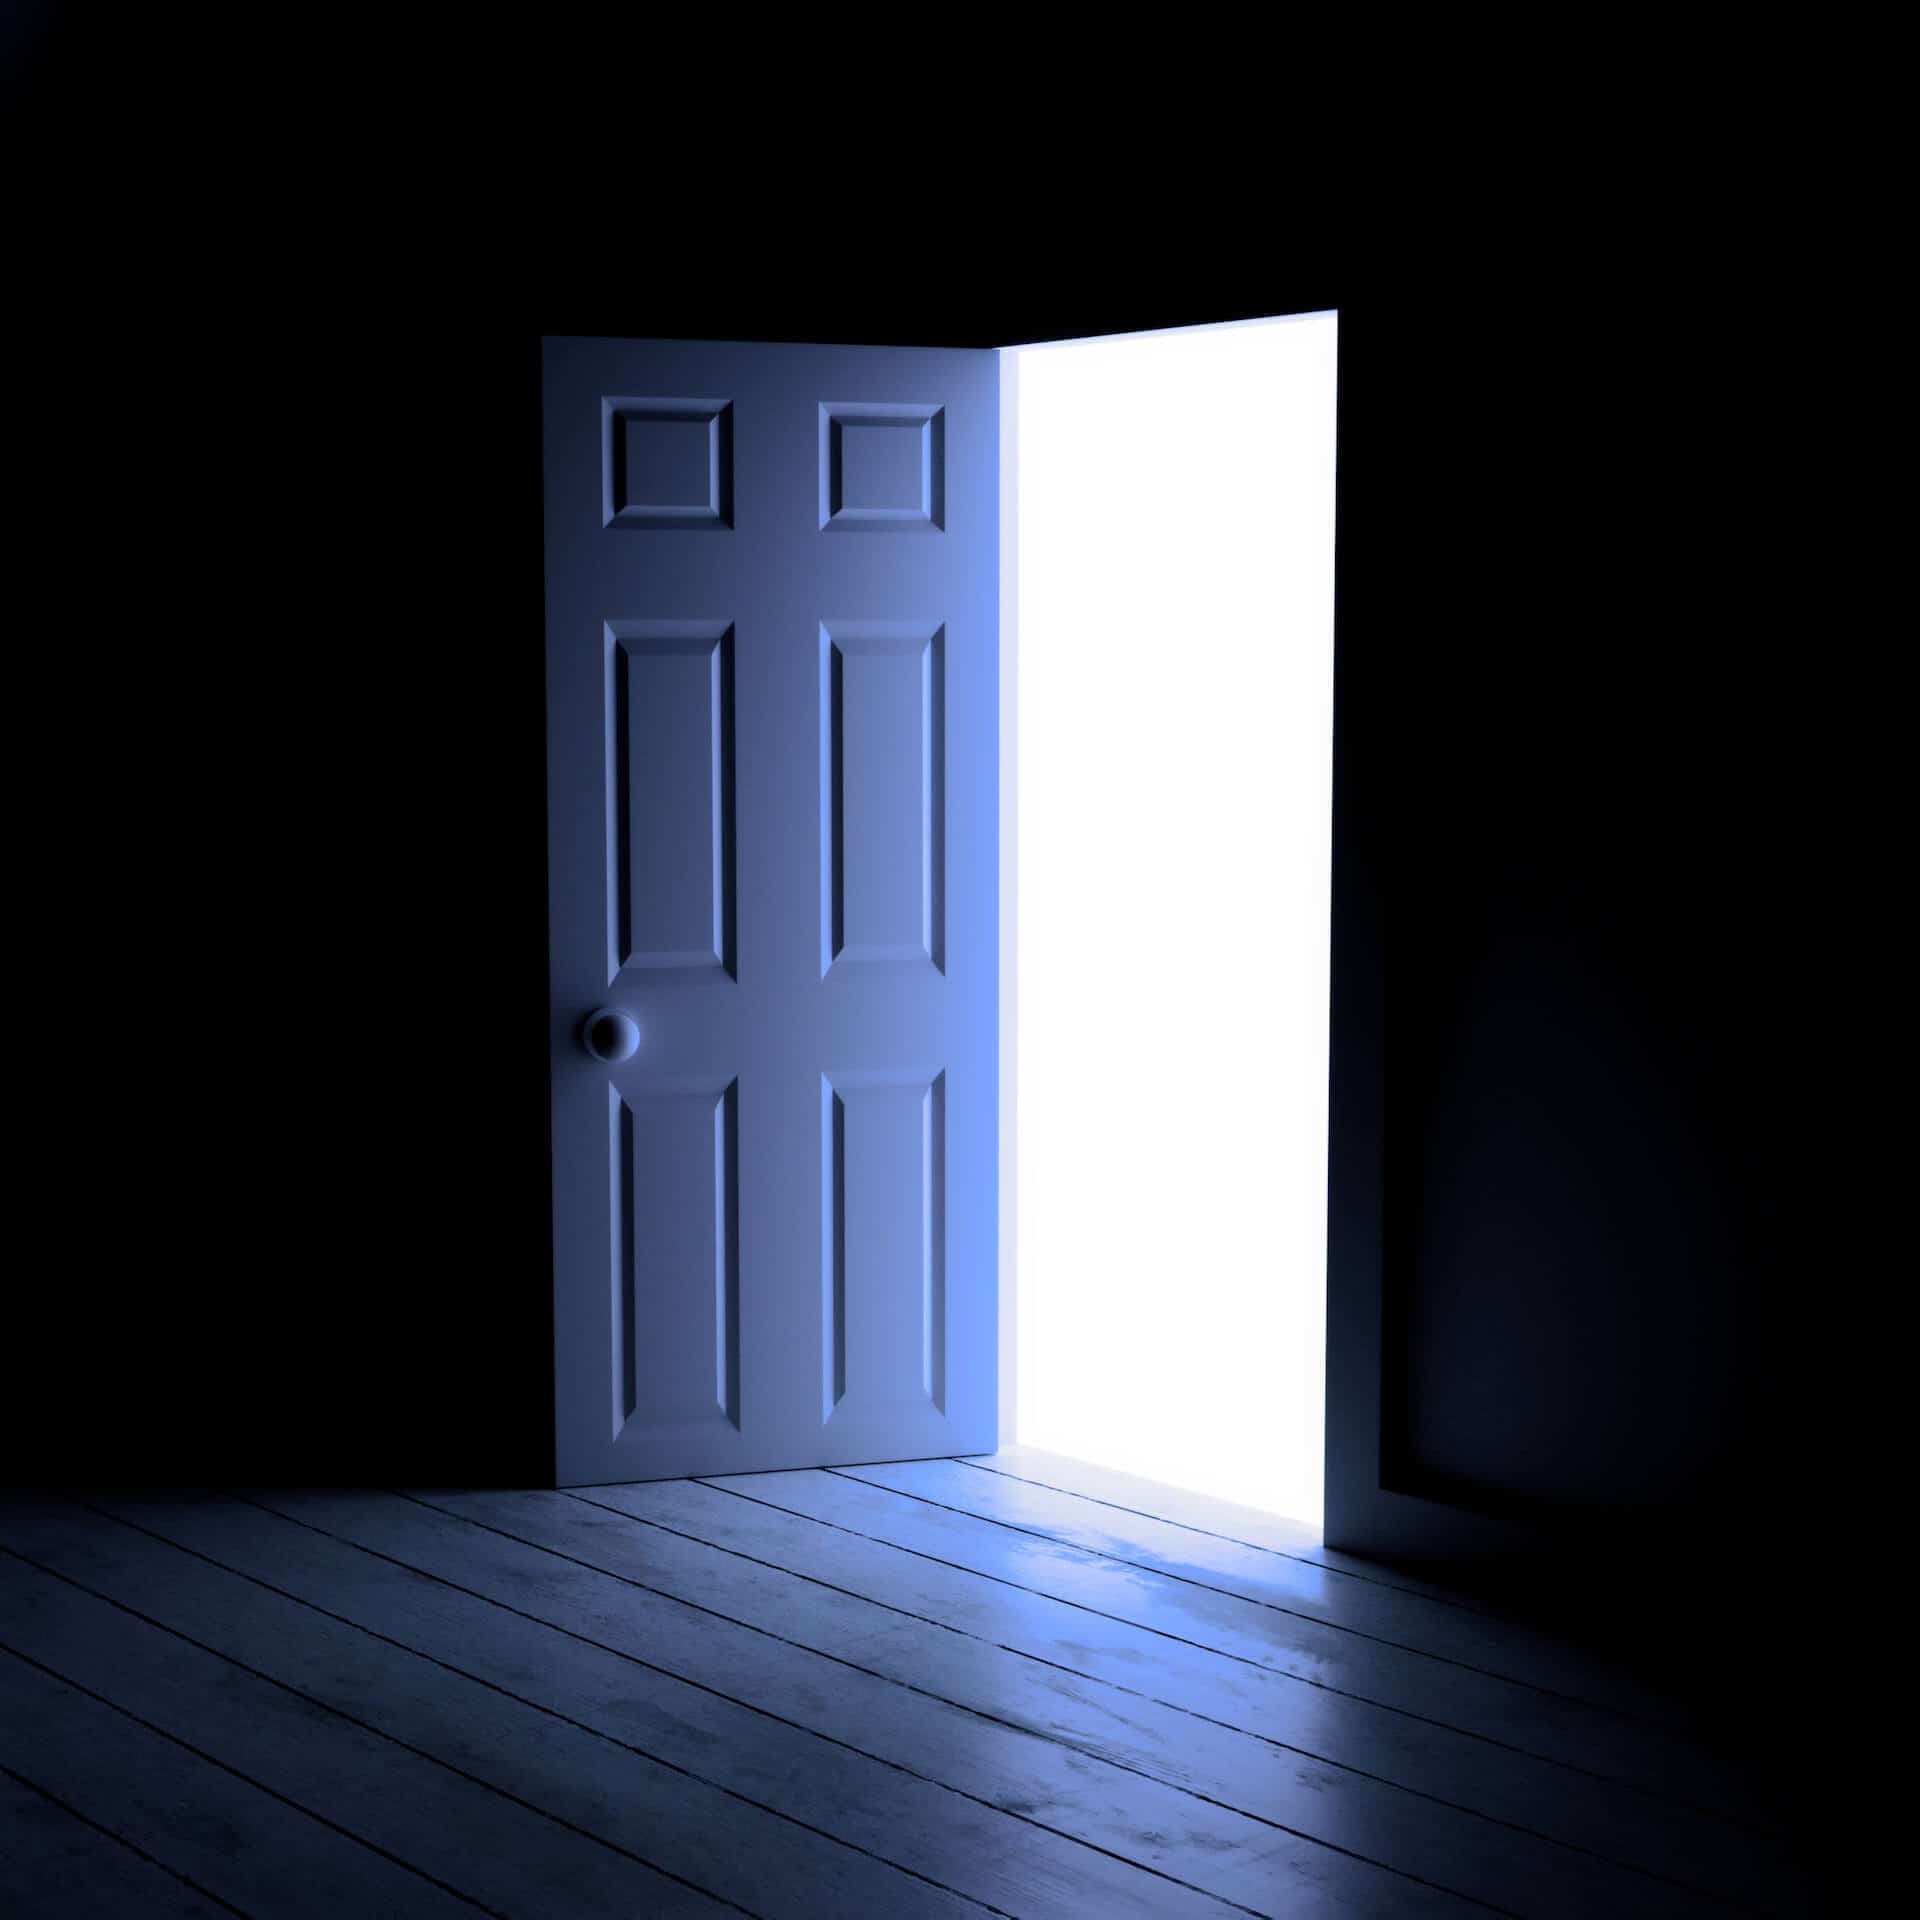 Enter light. Красная дверь в темноте. Вид через дверь. 3д двери. Дверь в темном синем цвете.